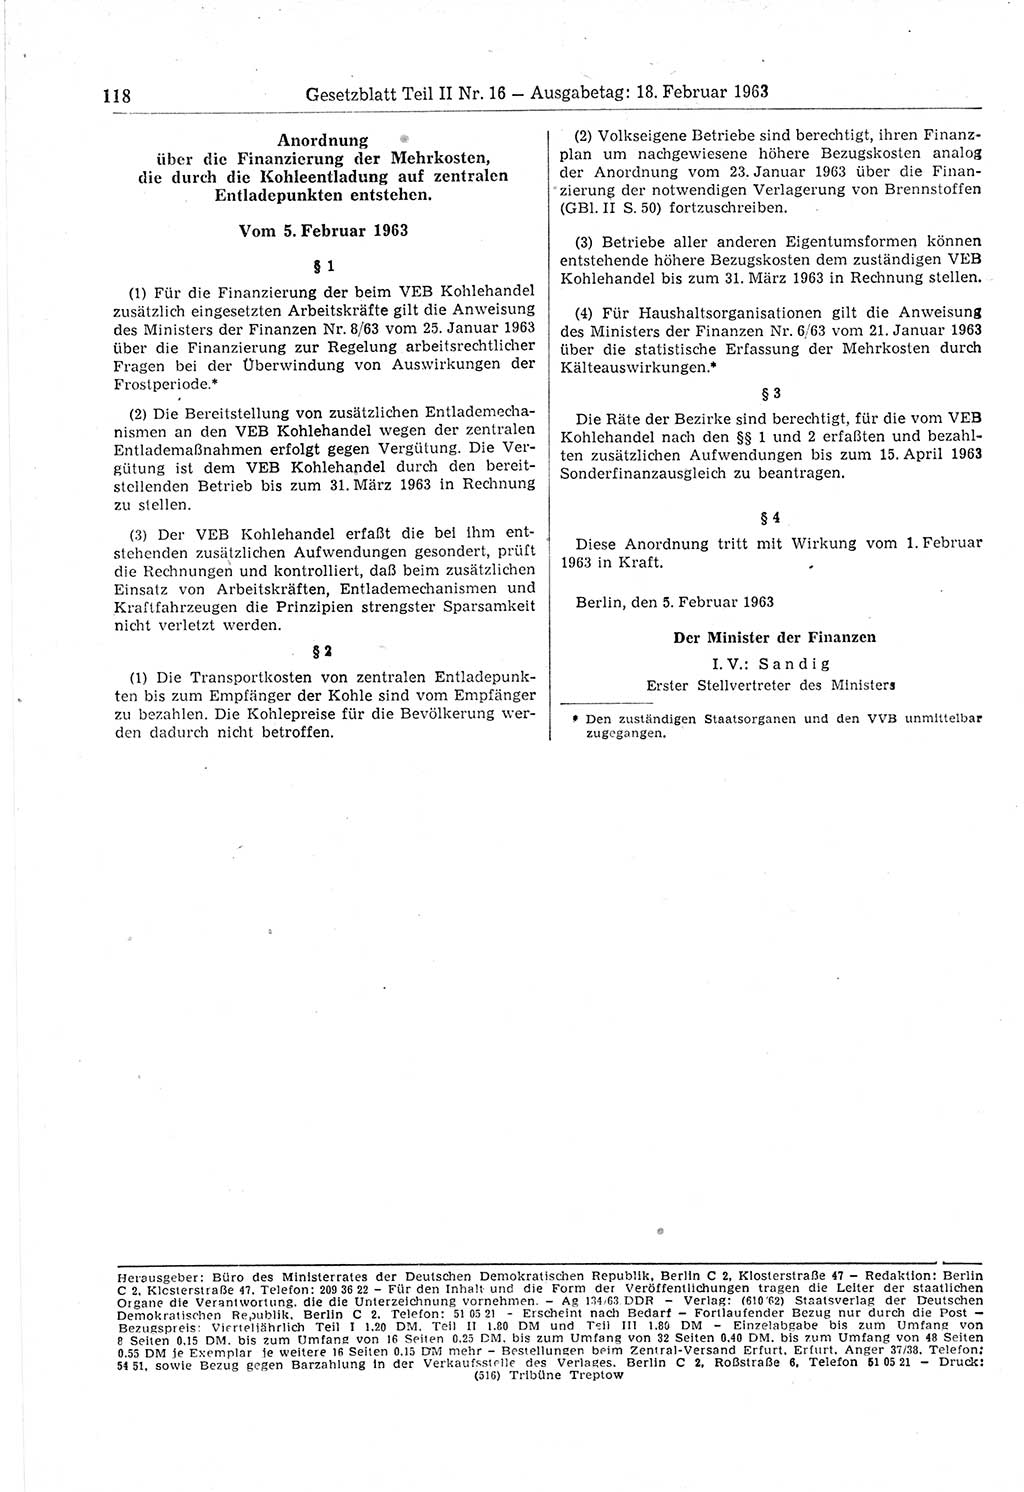 Gesetzblatt (GBl.) der Deutschen Demokratischen Republik (DDR) Teil ⅠⅠ 1963, Seite 118 (GBl. DDR ⅠⅠ 1963, S. 118)